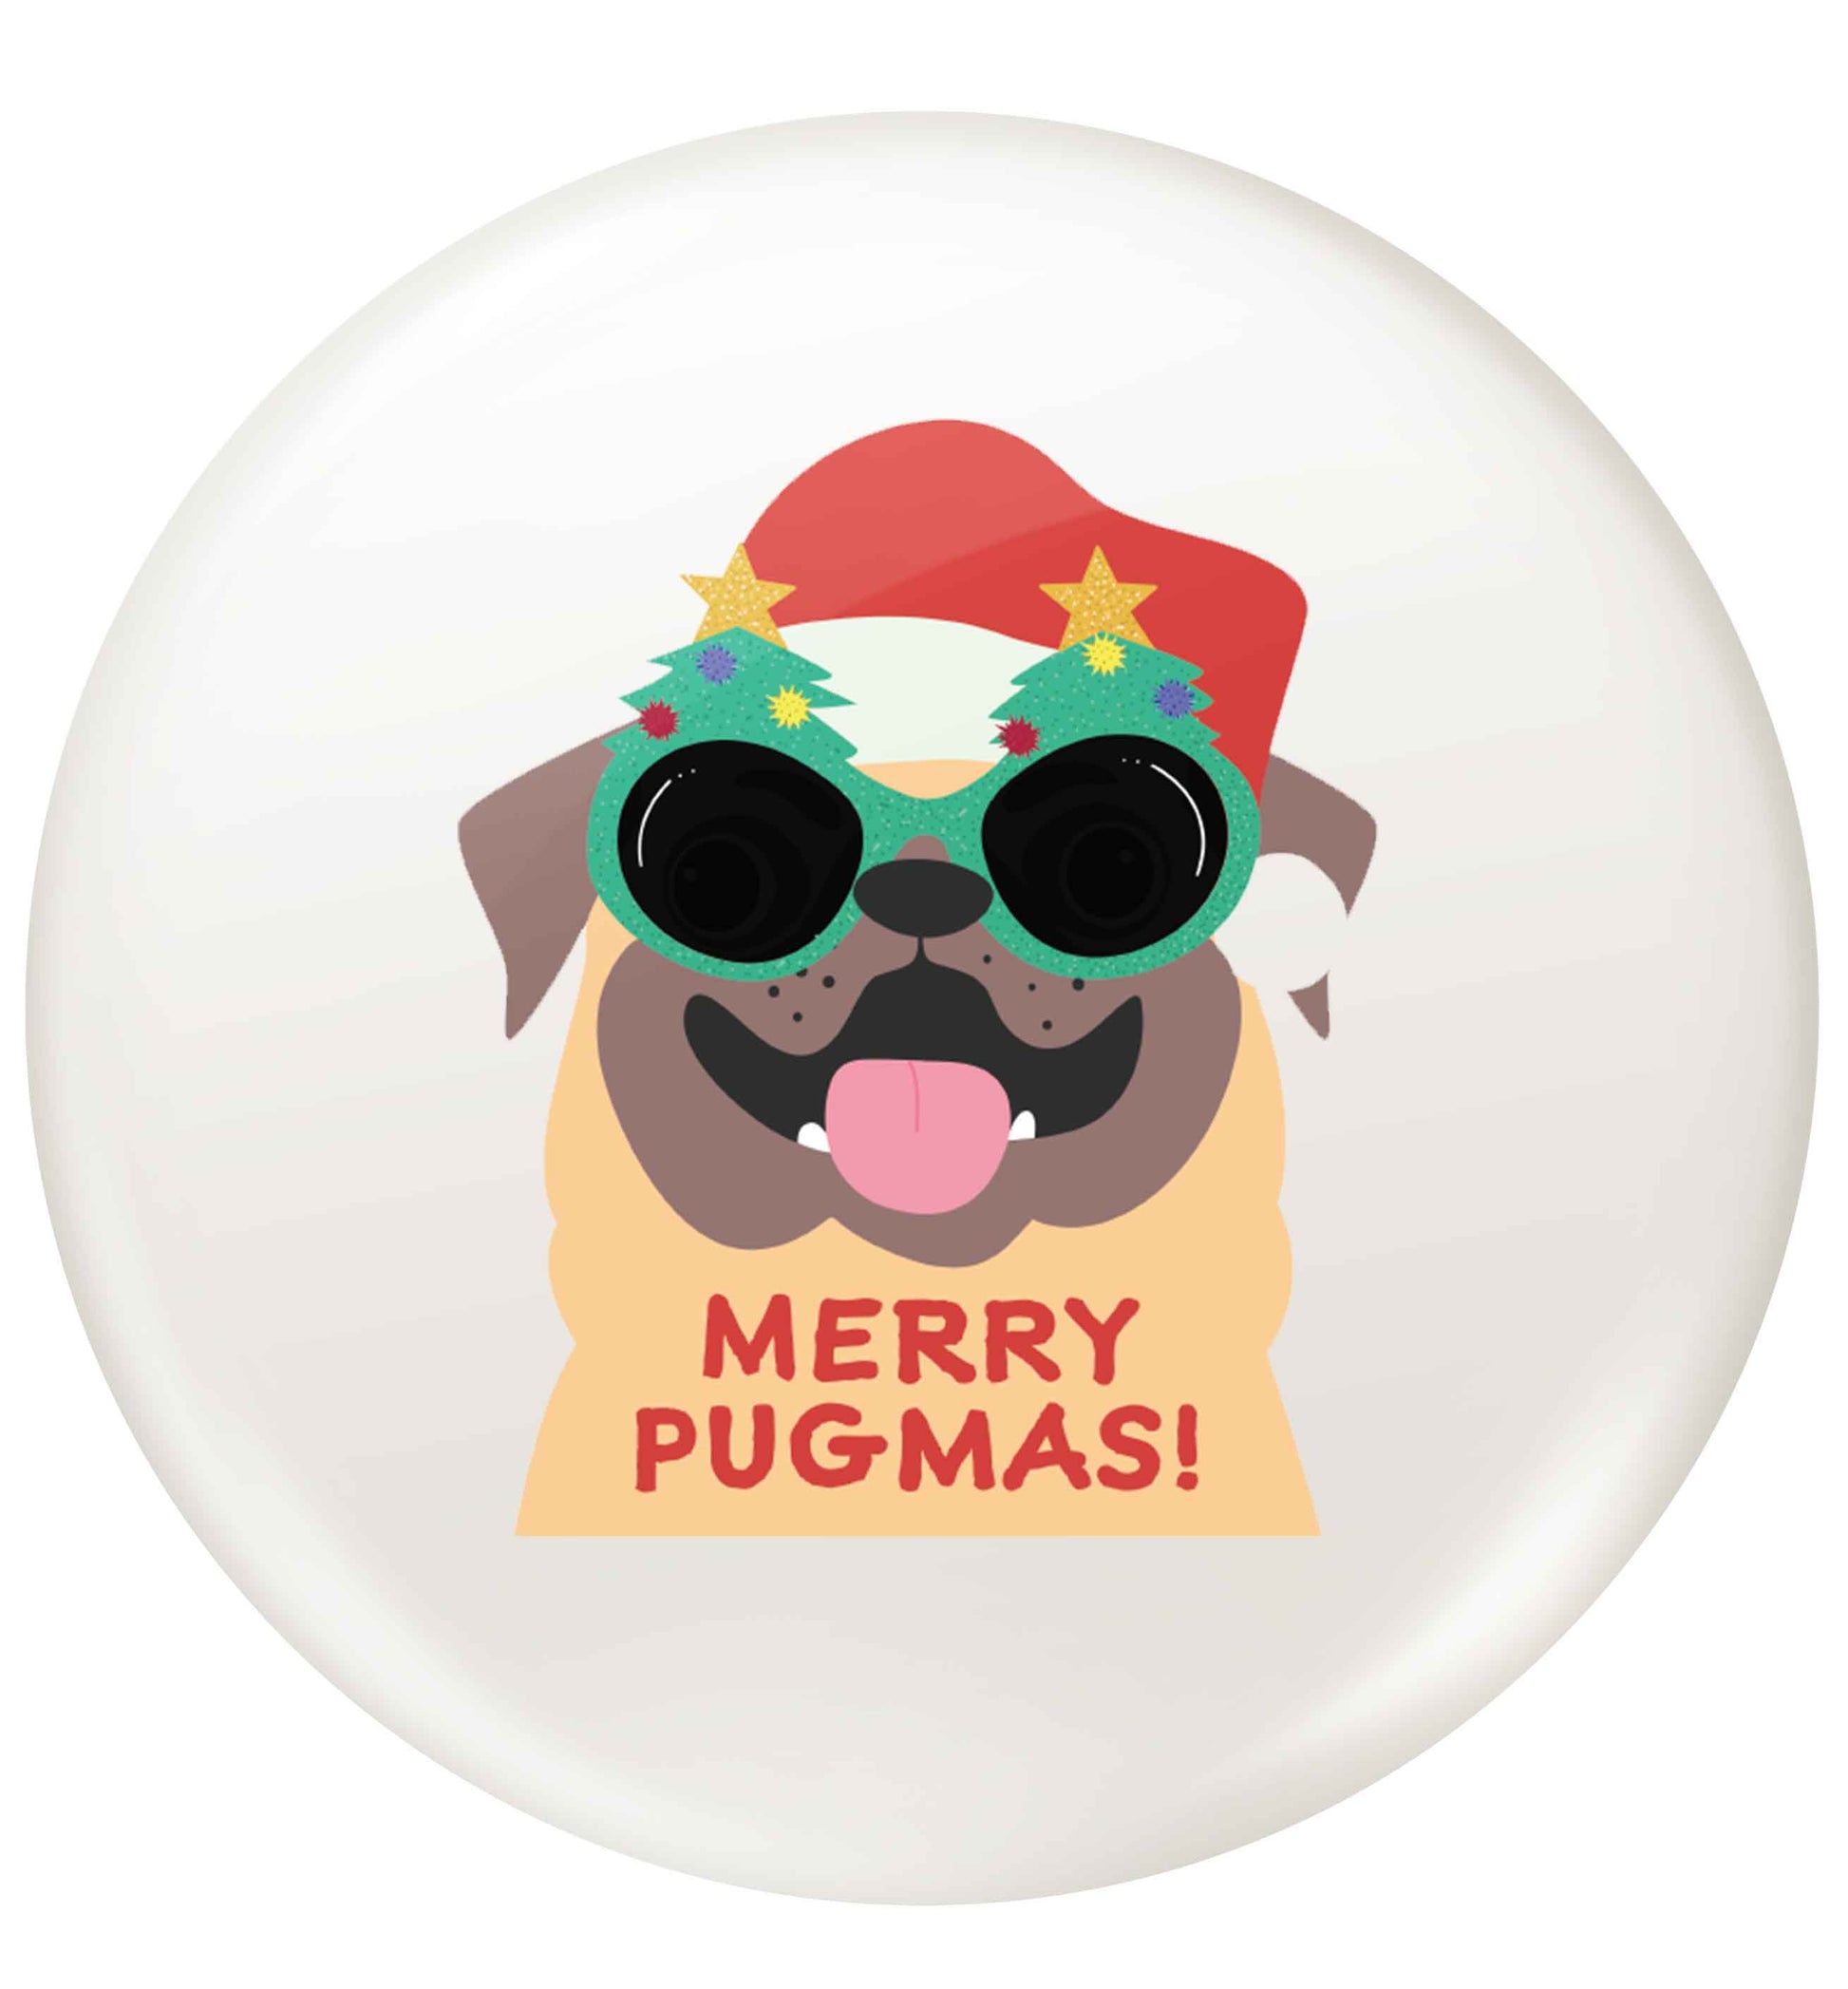 Merry Pugmas small 25mm Pin badge